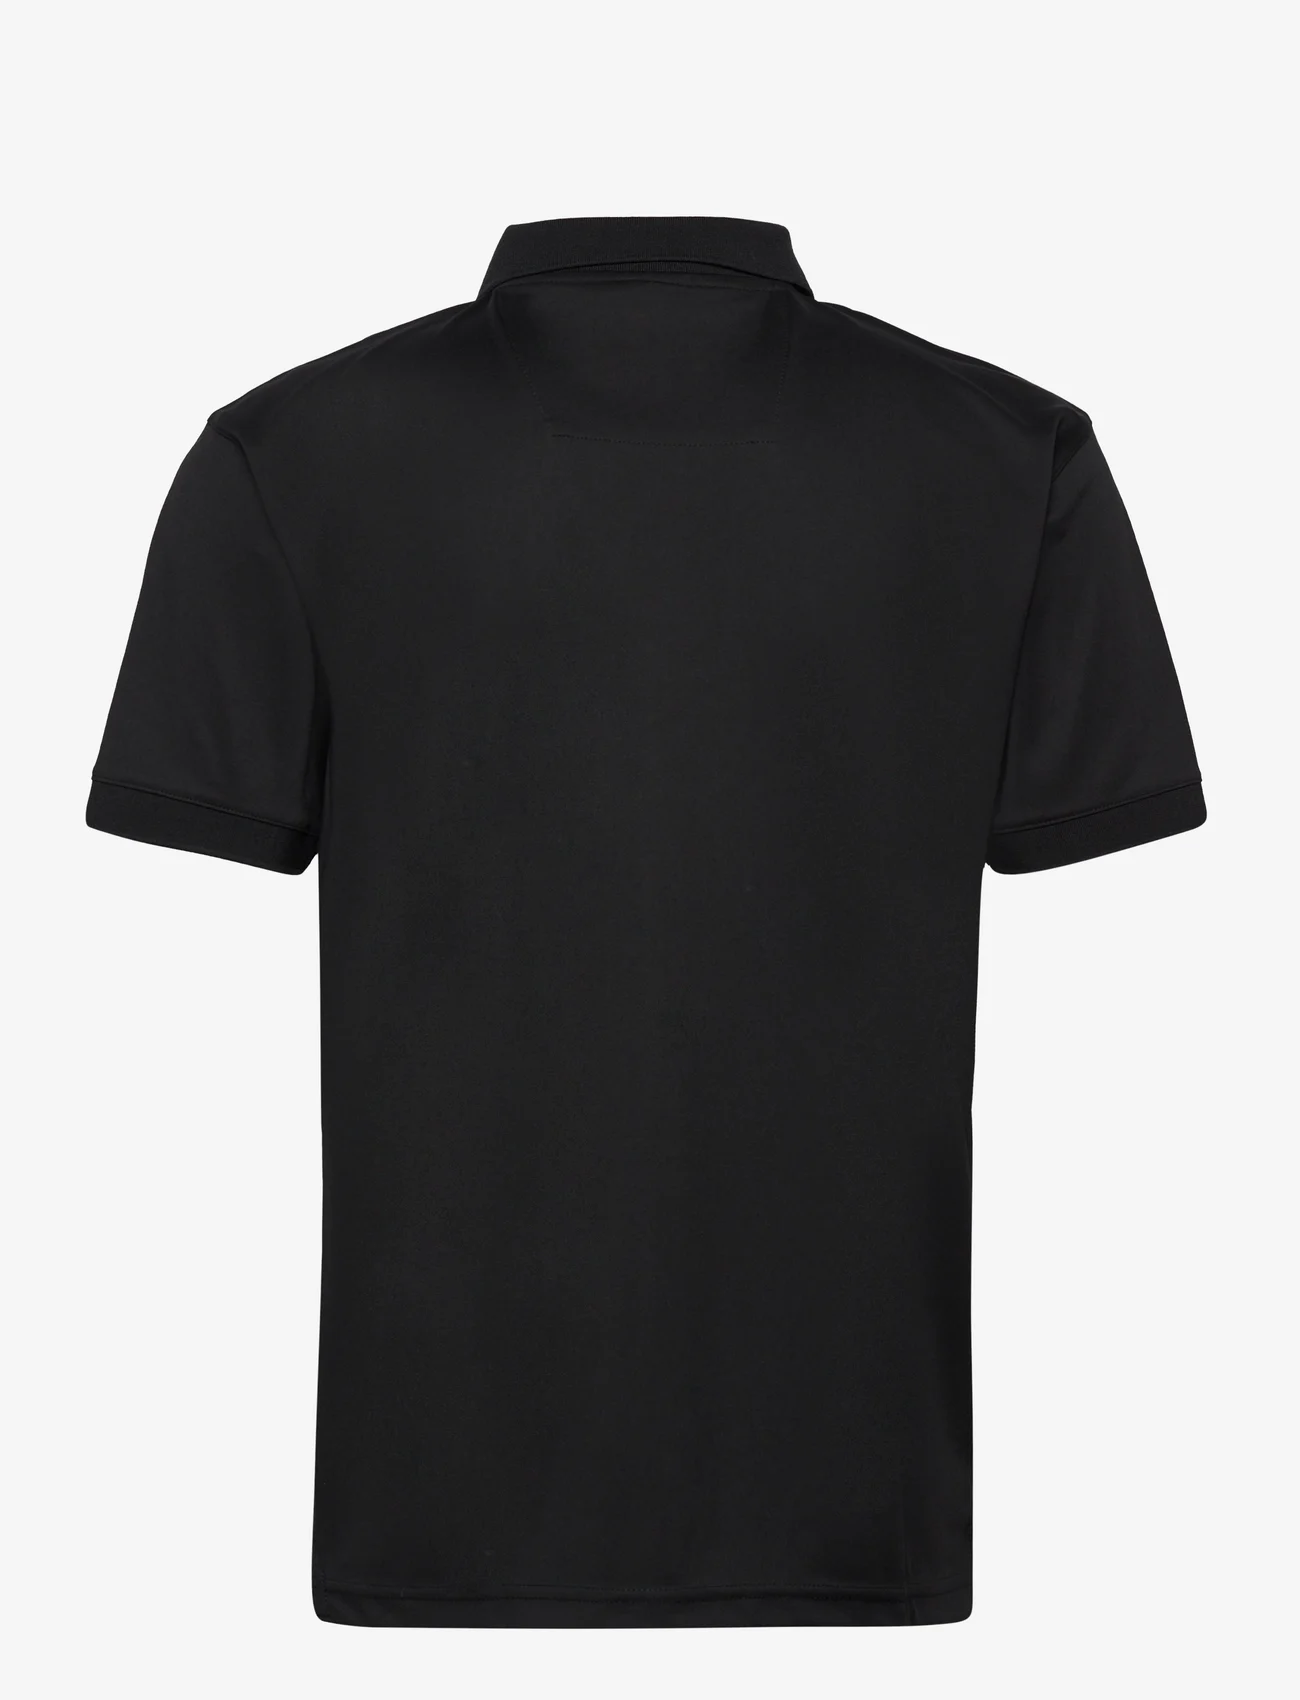 Lexton Links - Bond Poloshirt - mažiausios kainos - black - 1